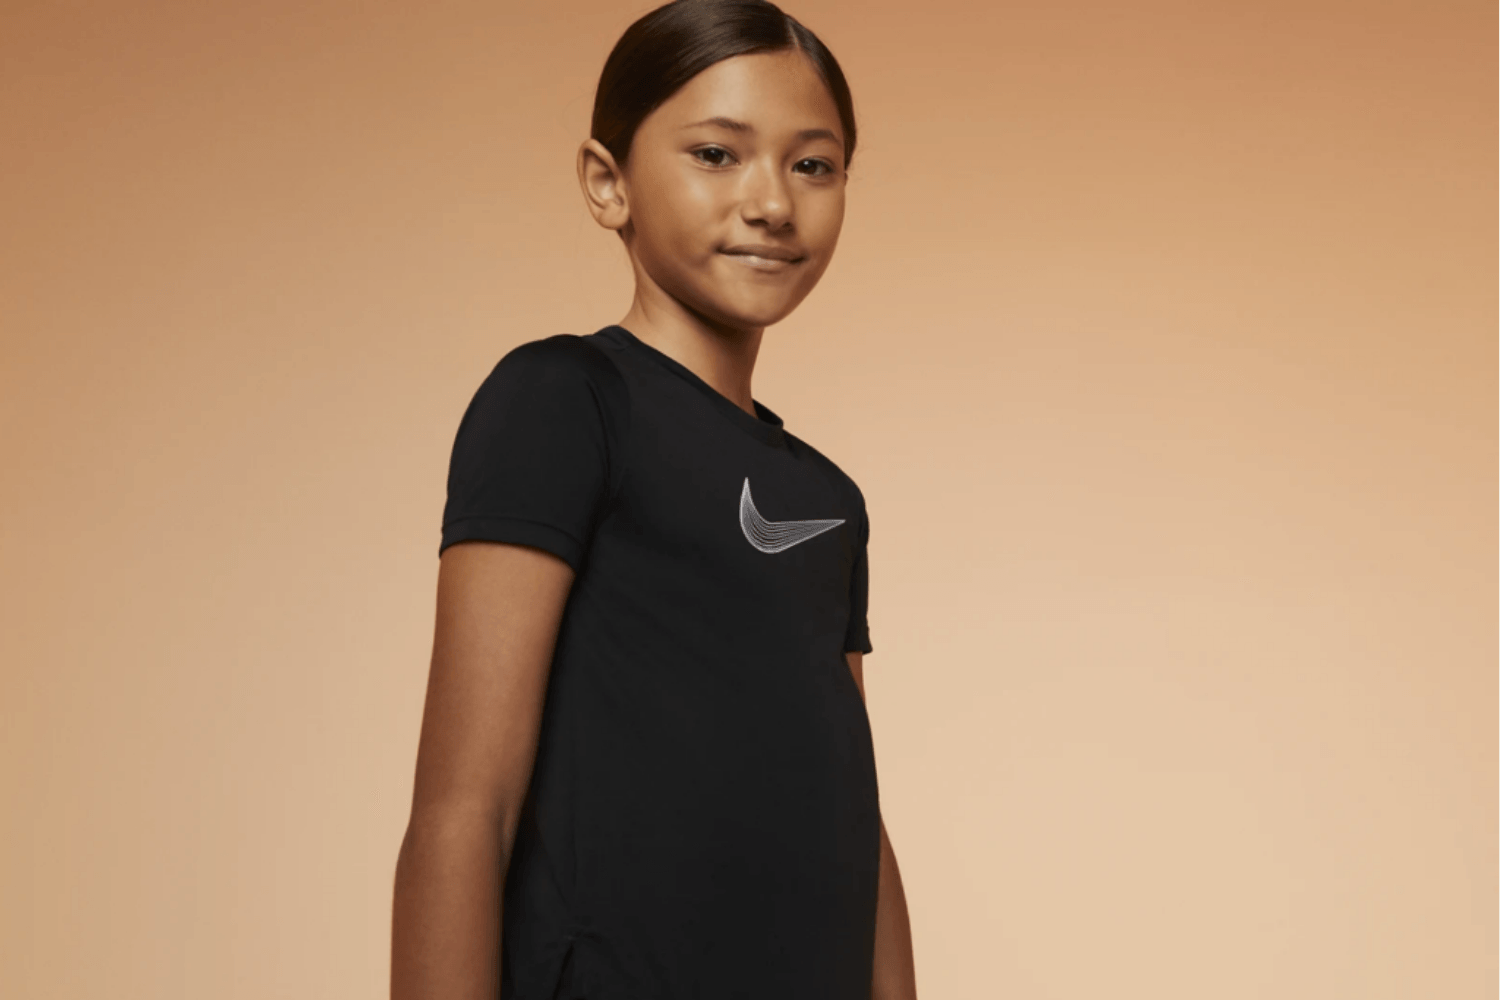 Das ist die neue Nike Teen Girls Kollektion